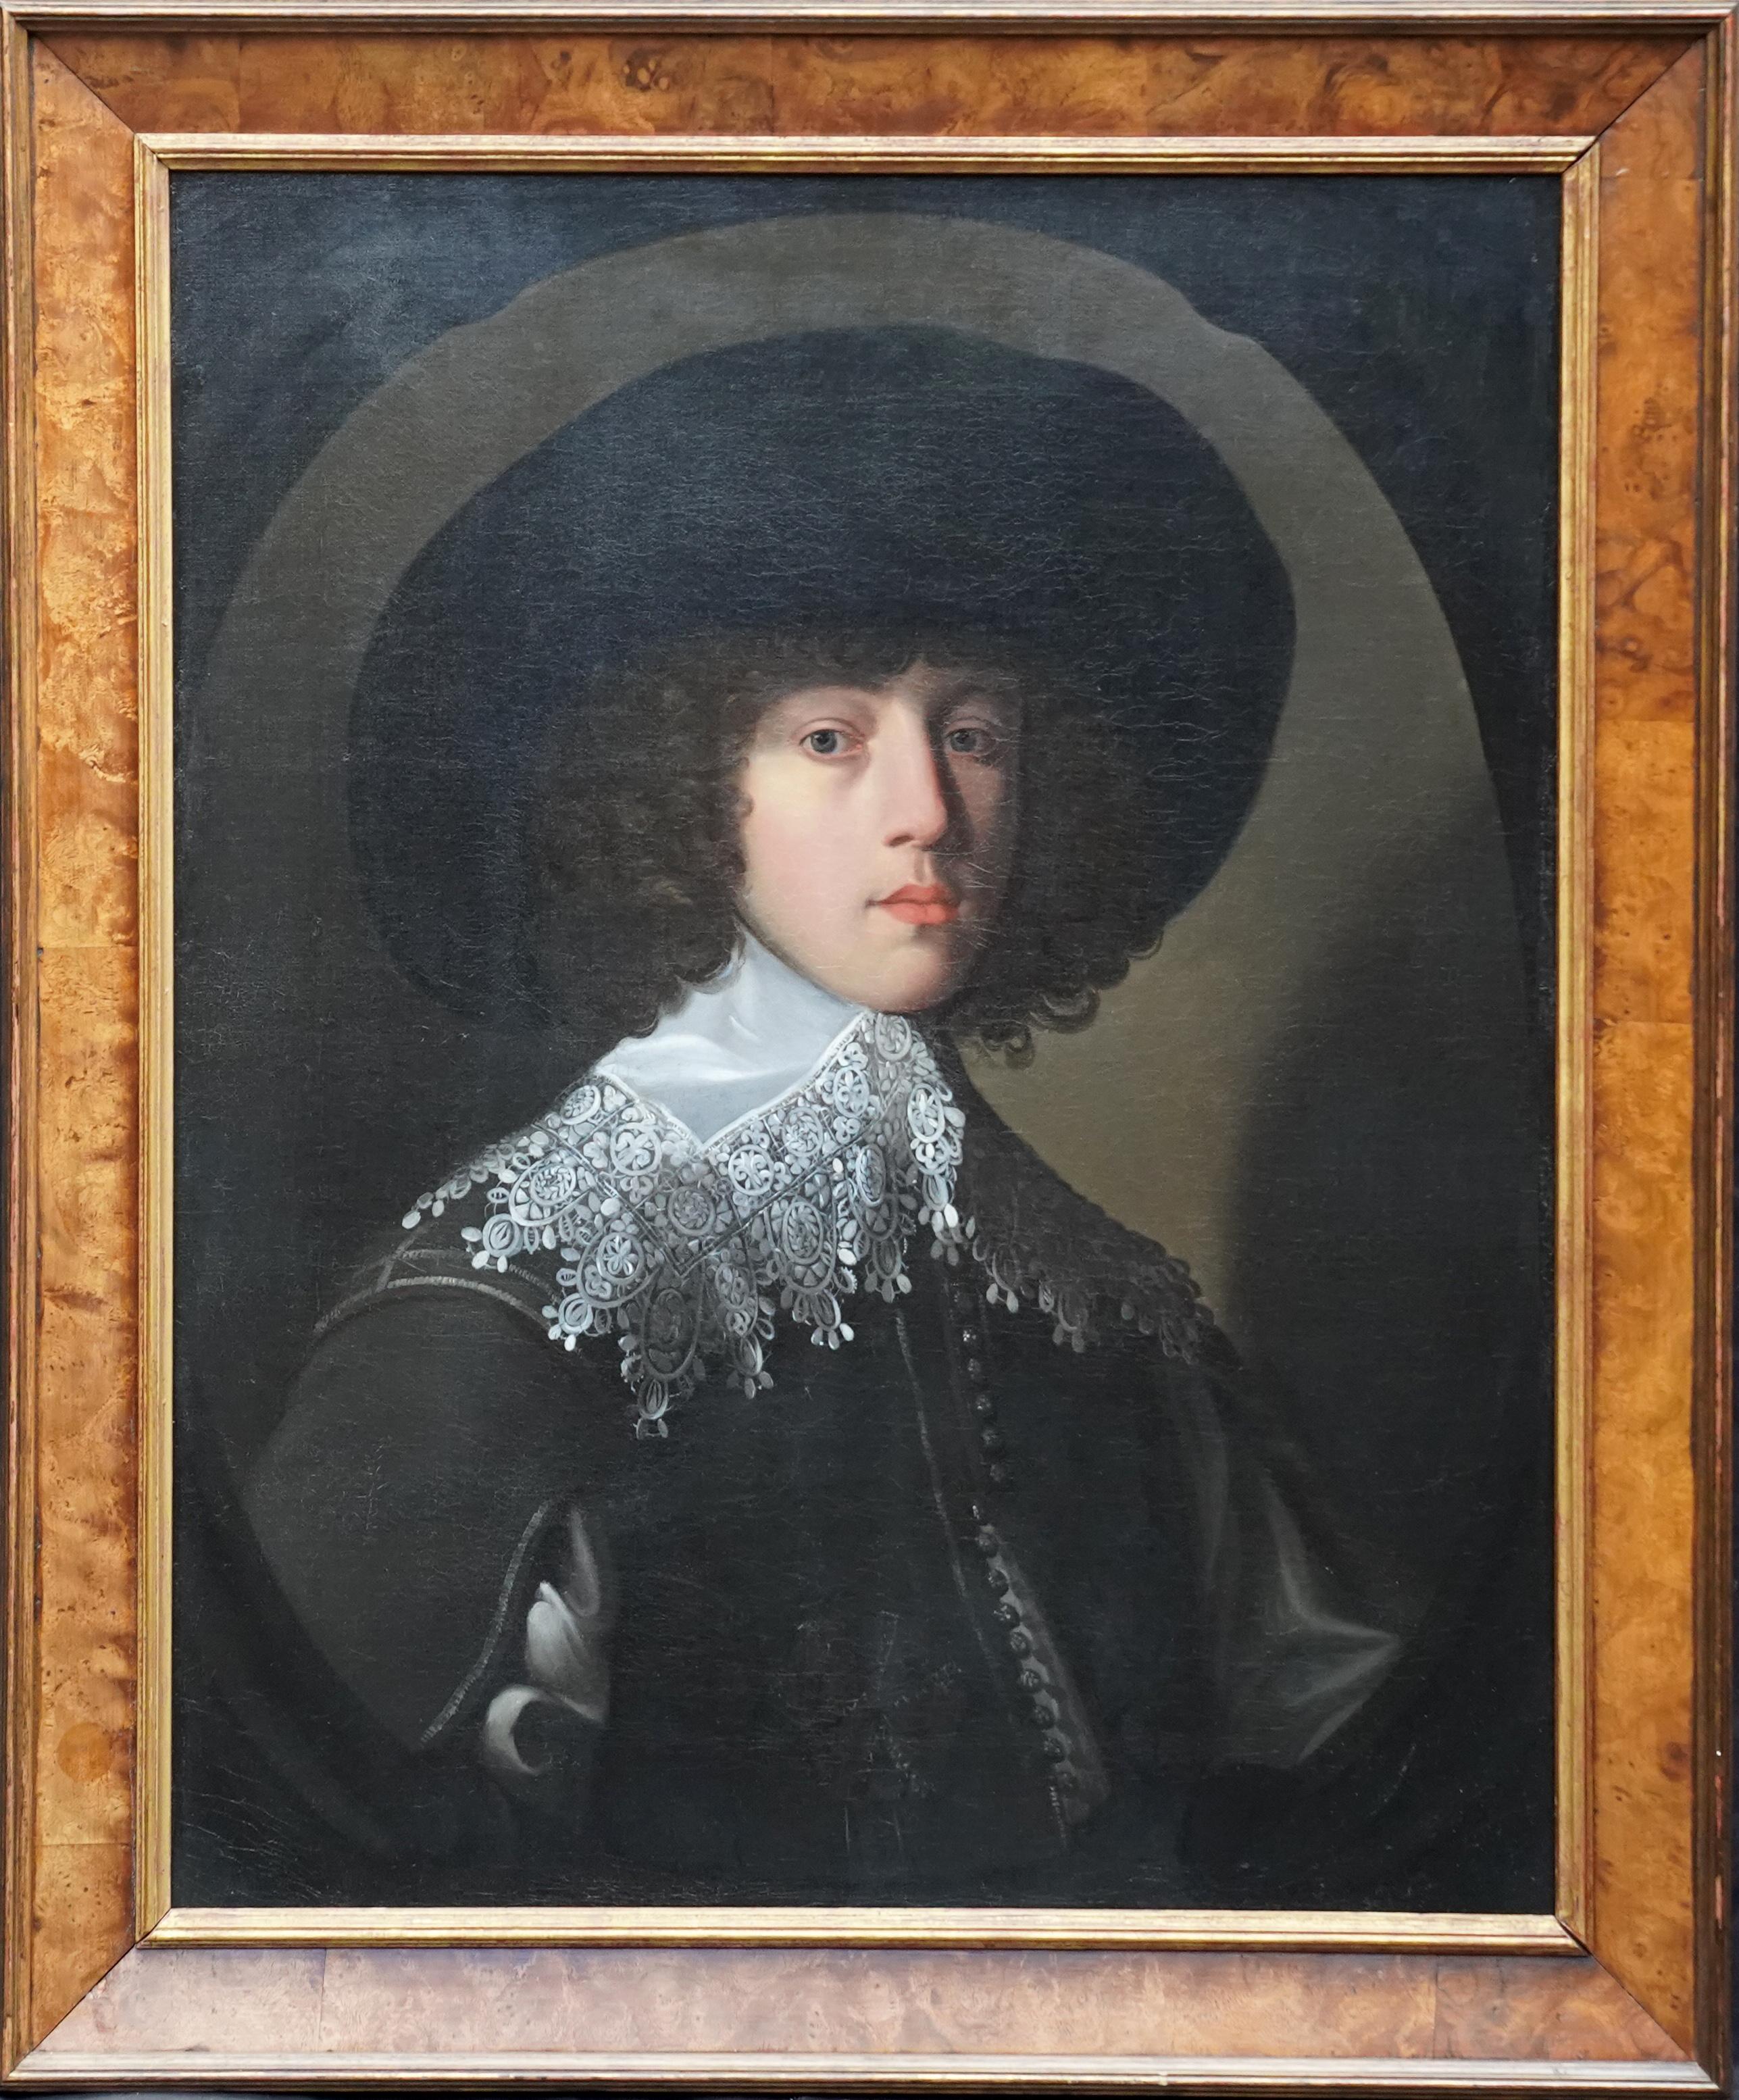 Gerrard van Honthorst Portrait Painting - Portrait of a Young Gentleman - Dutch Old Master 17thC art portrait oil painting